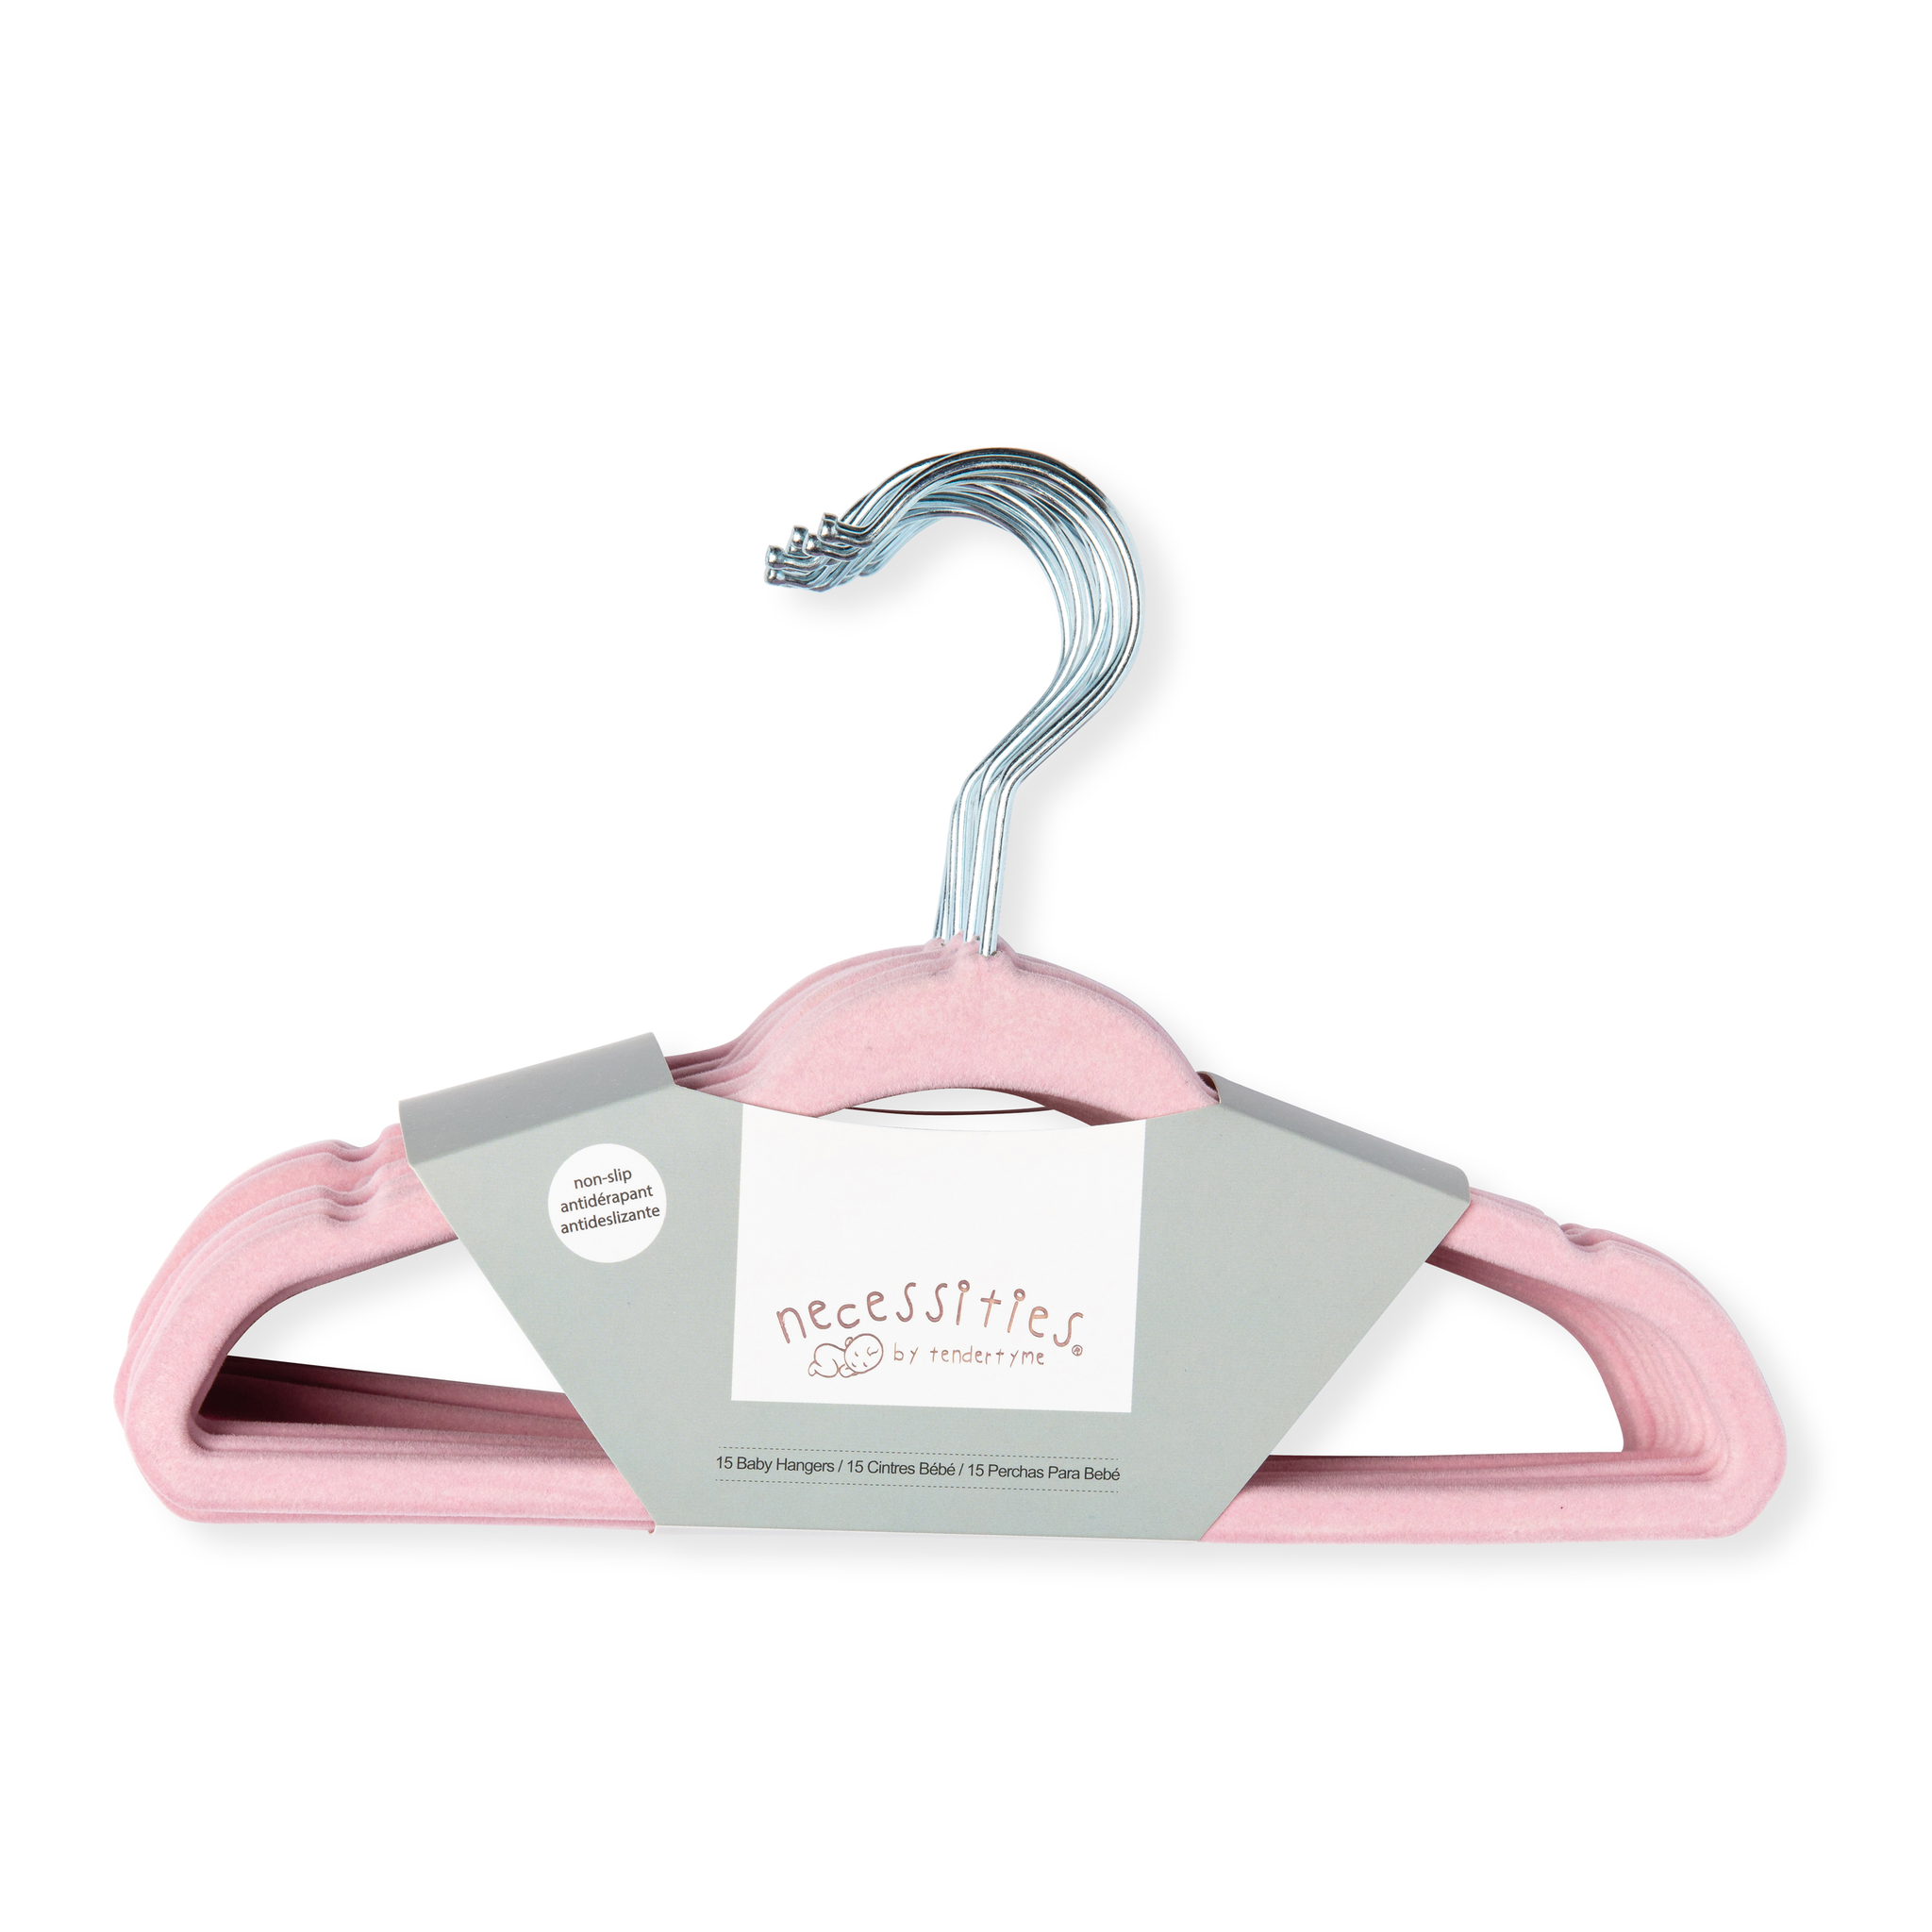  GoodtoU Baby Hangers Pink Kids Hangers Clothing Baby Hangers  for Nursery Plastic Kids Hangers 100 Pack : Home & Kitchen